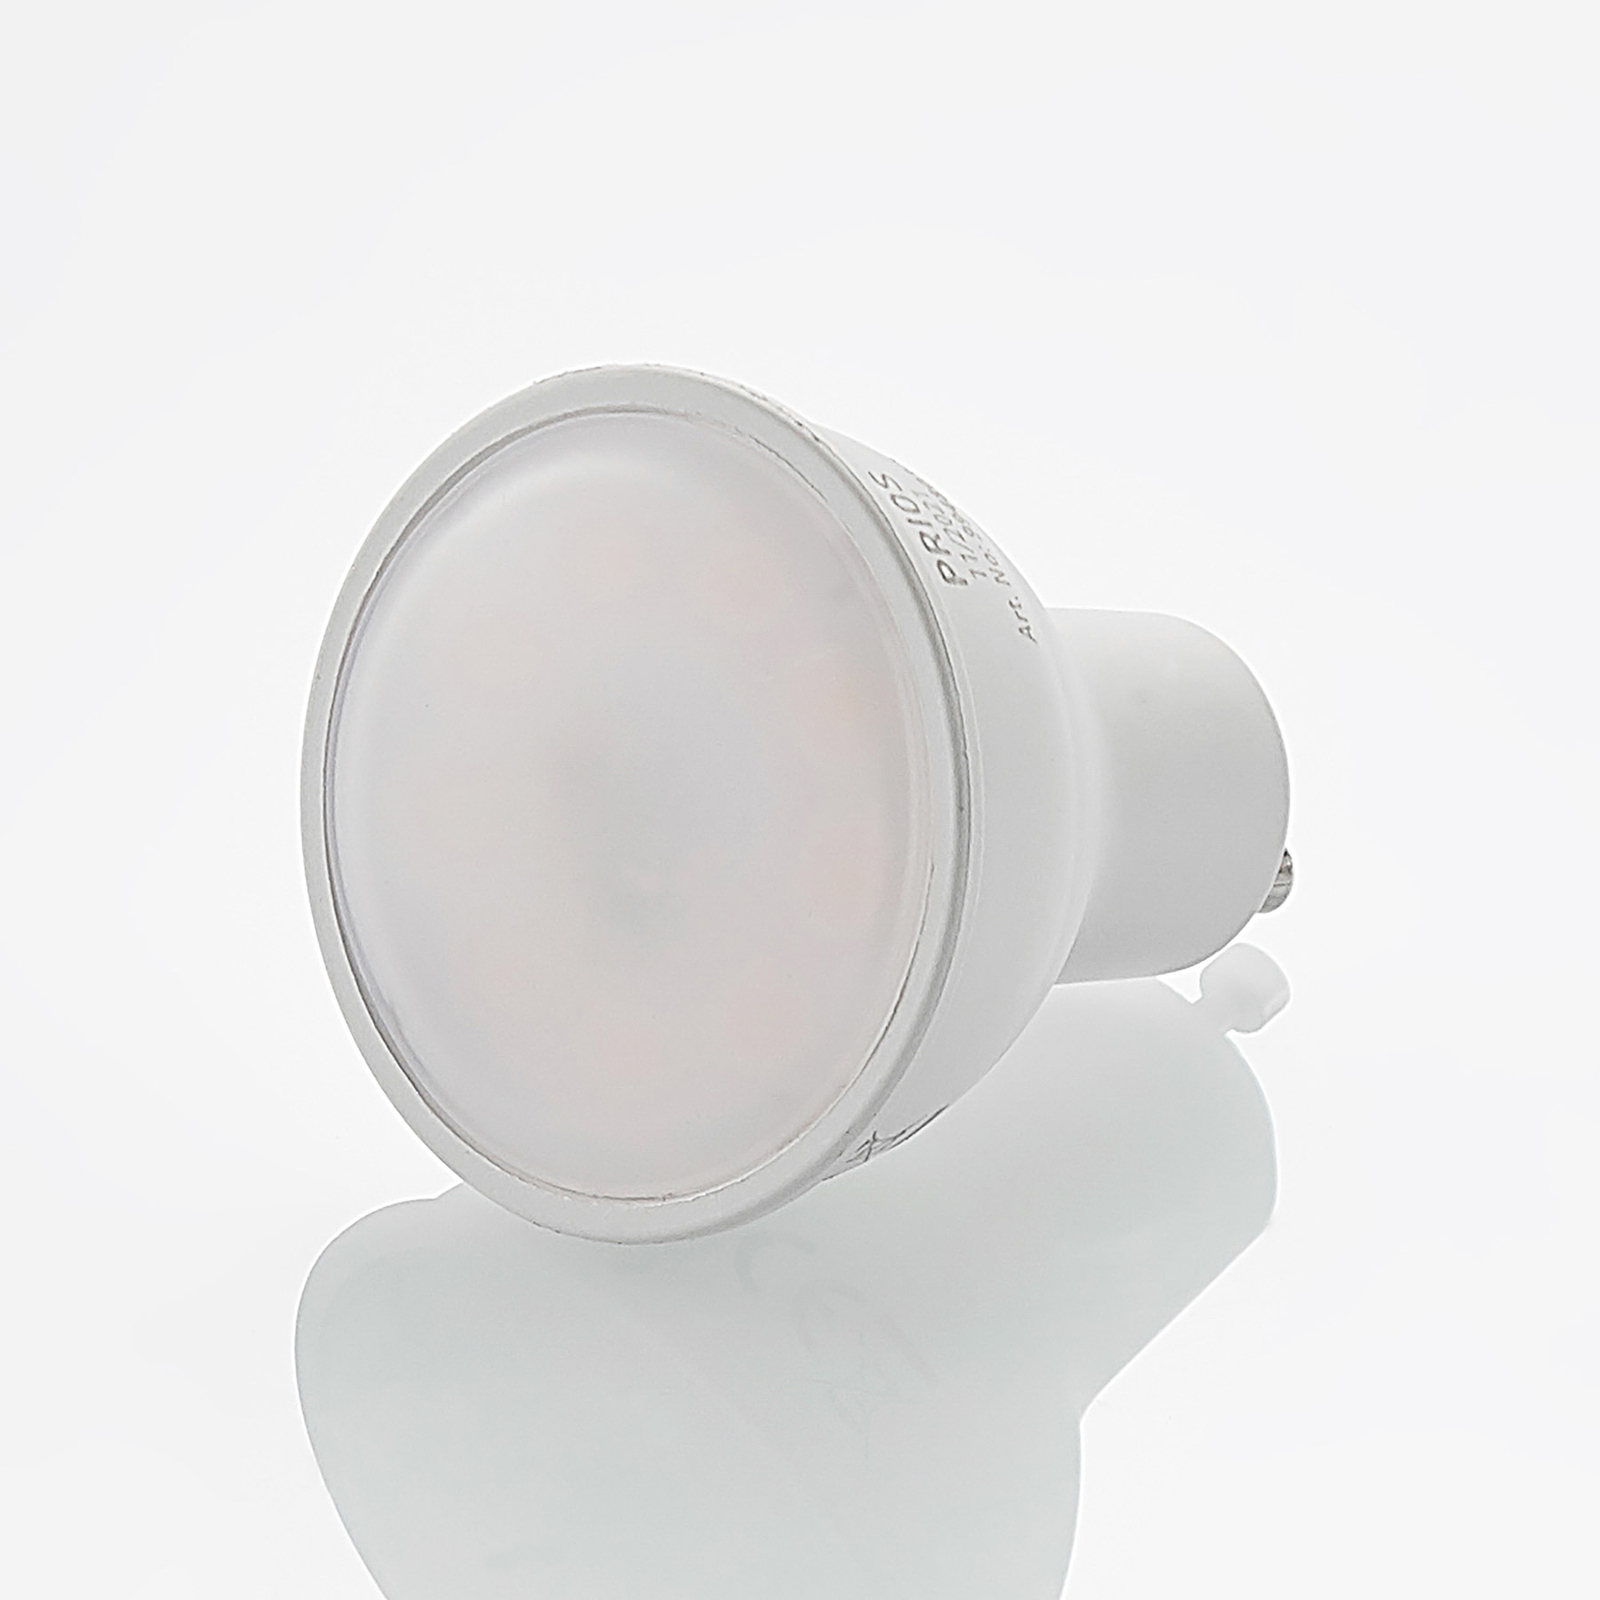 LED reflector GU10 8W 3.000K 120°